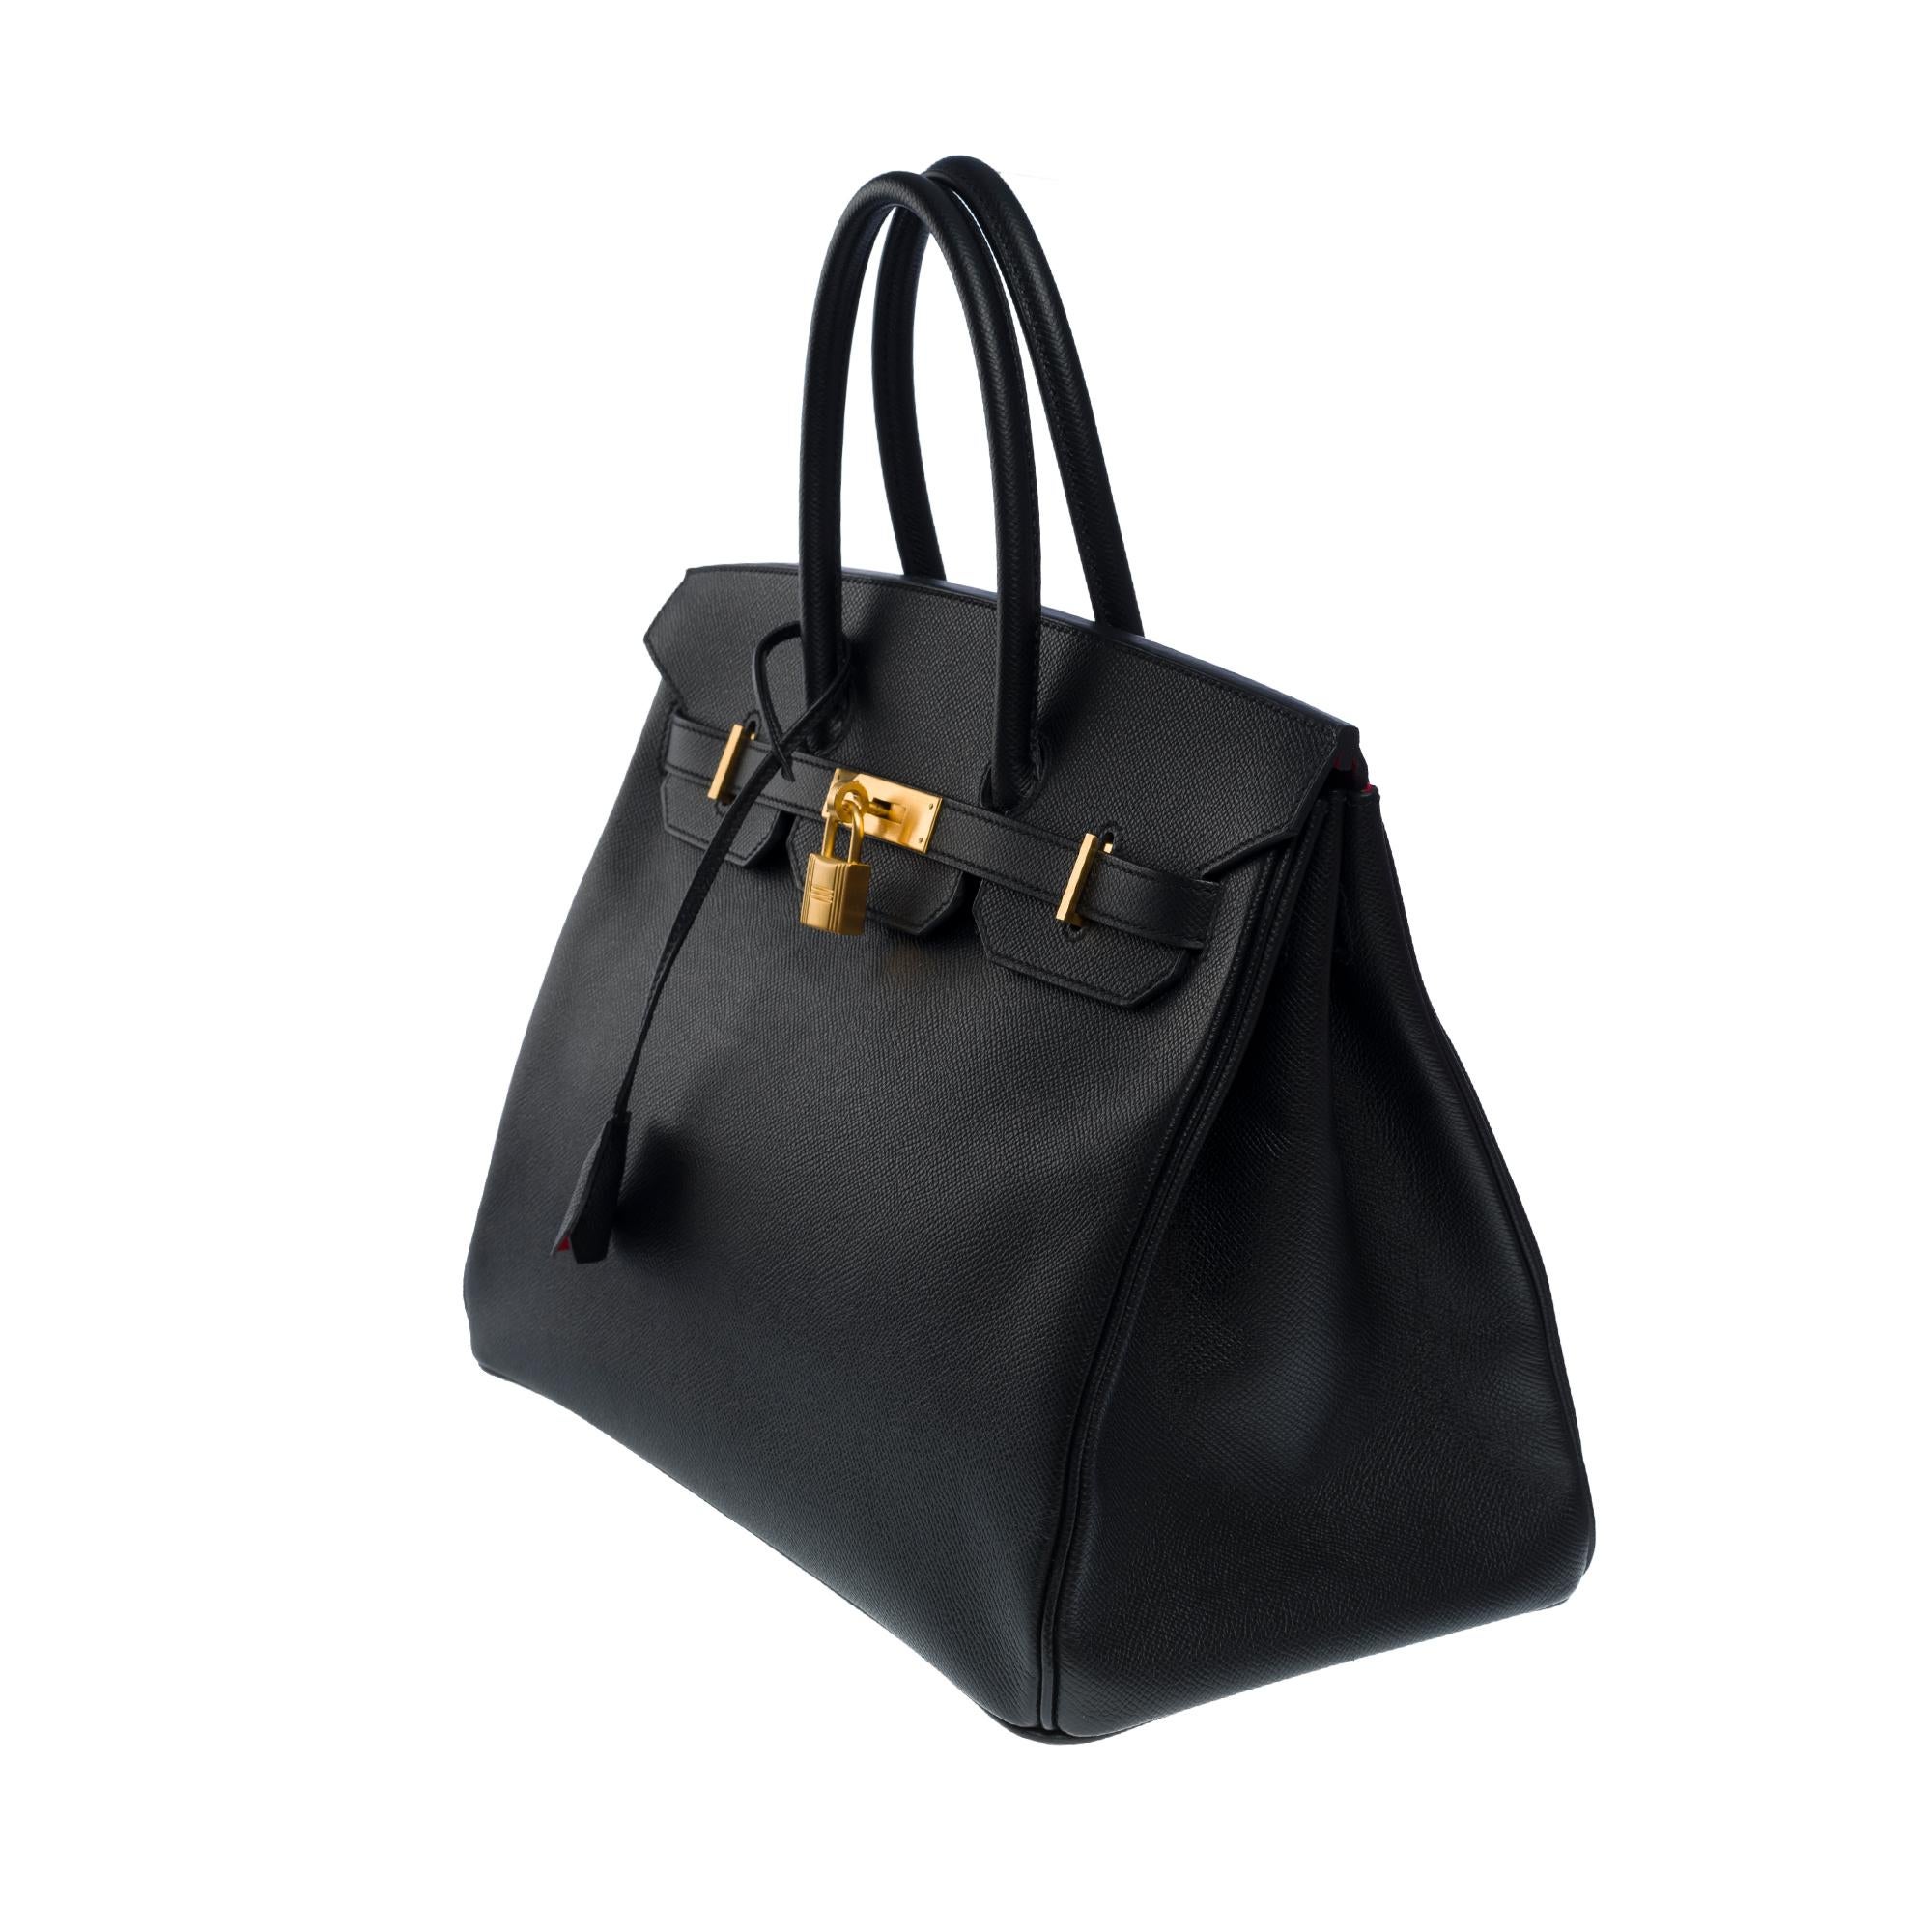 Rare Hermès Birkin 35 HSS (Special Order) handbag in black epsom leather, BGHW In Excellent Condition In Paris, IDF